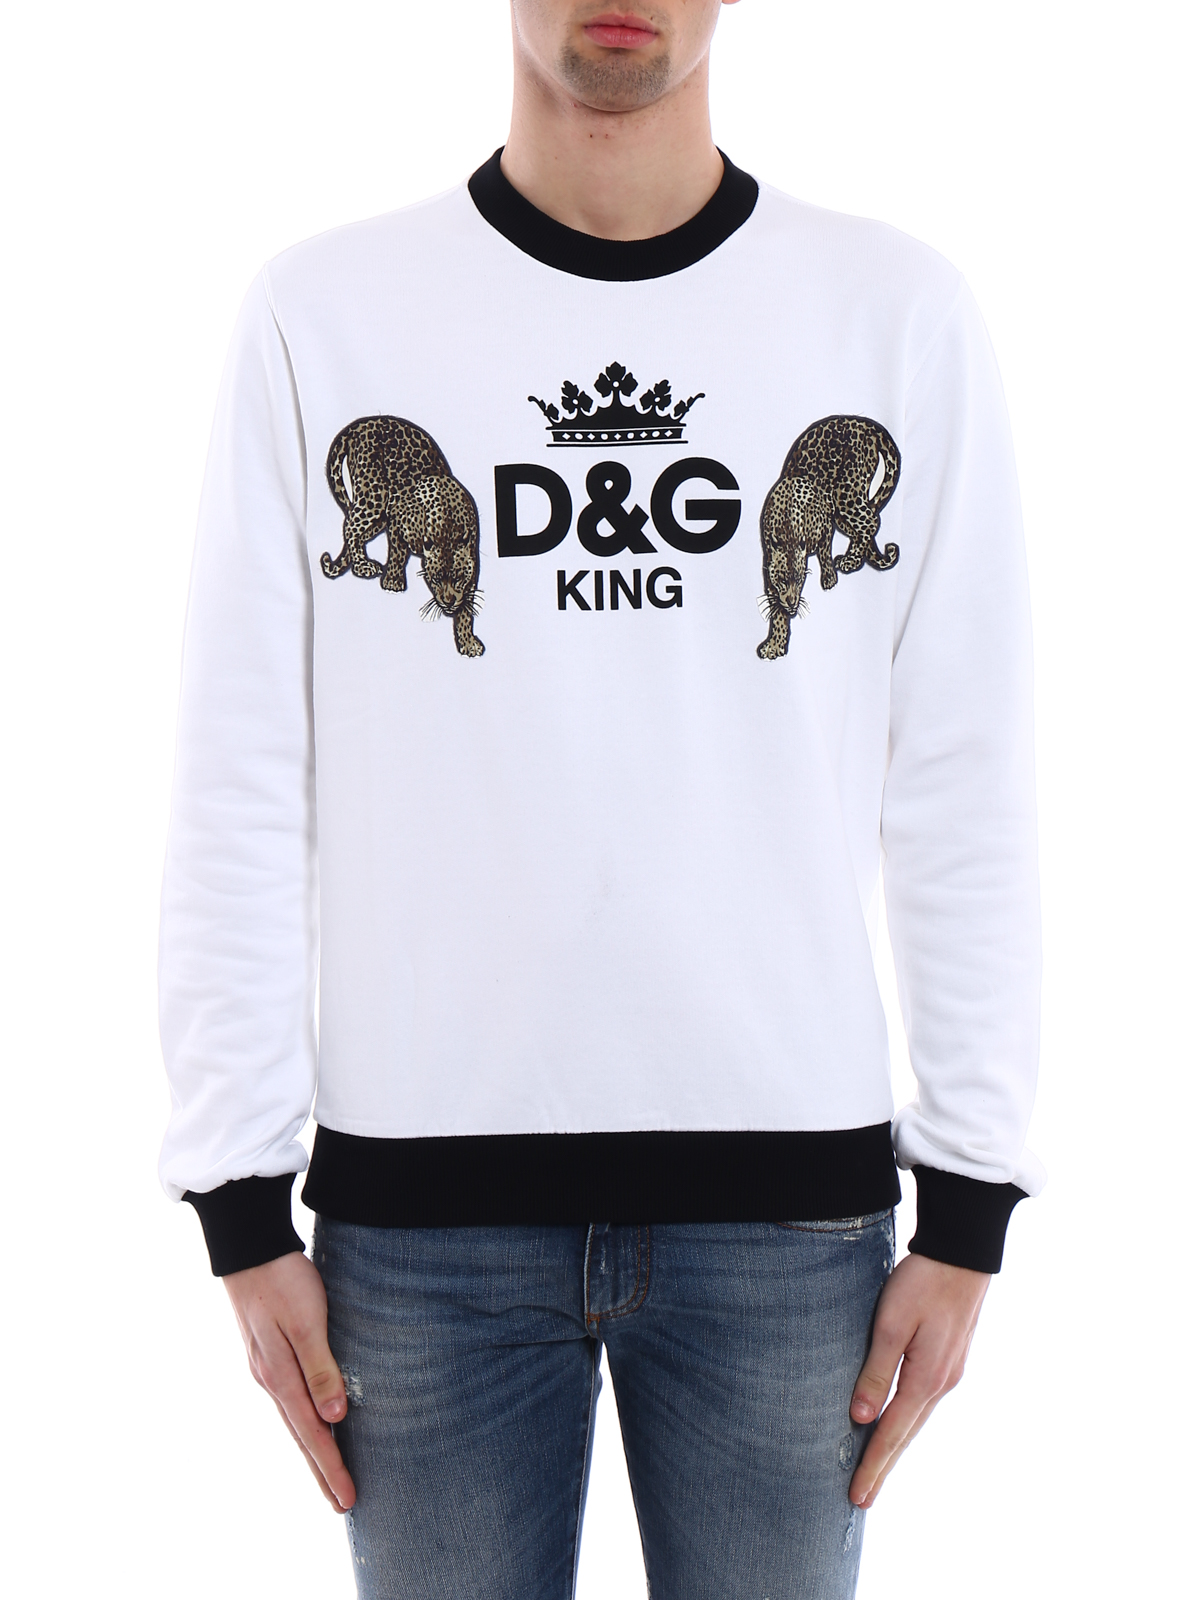 d&g king sweater